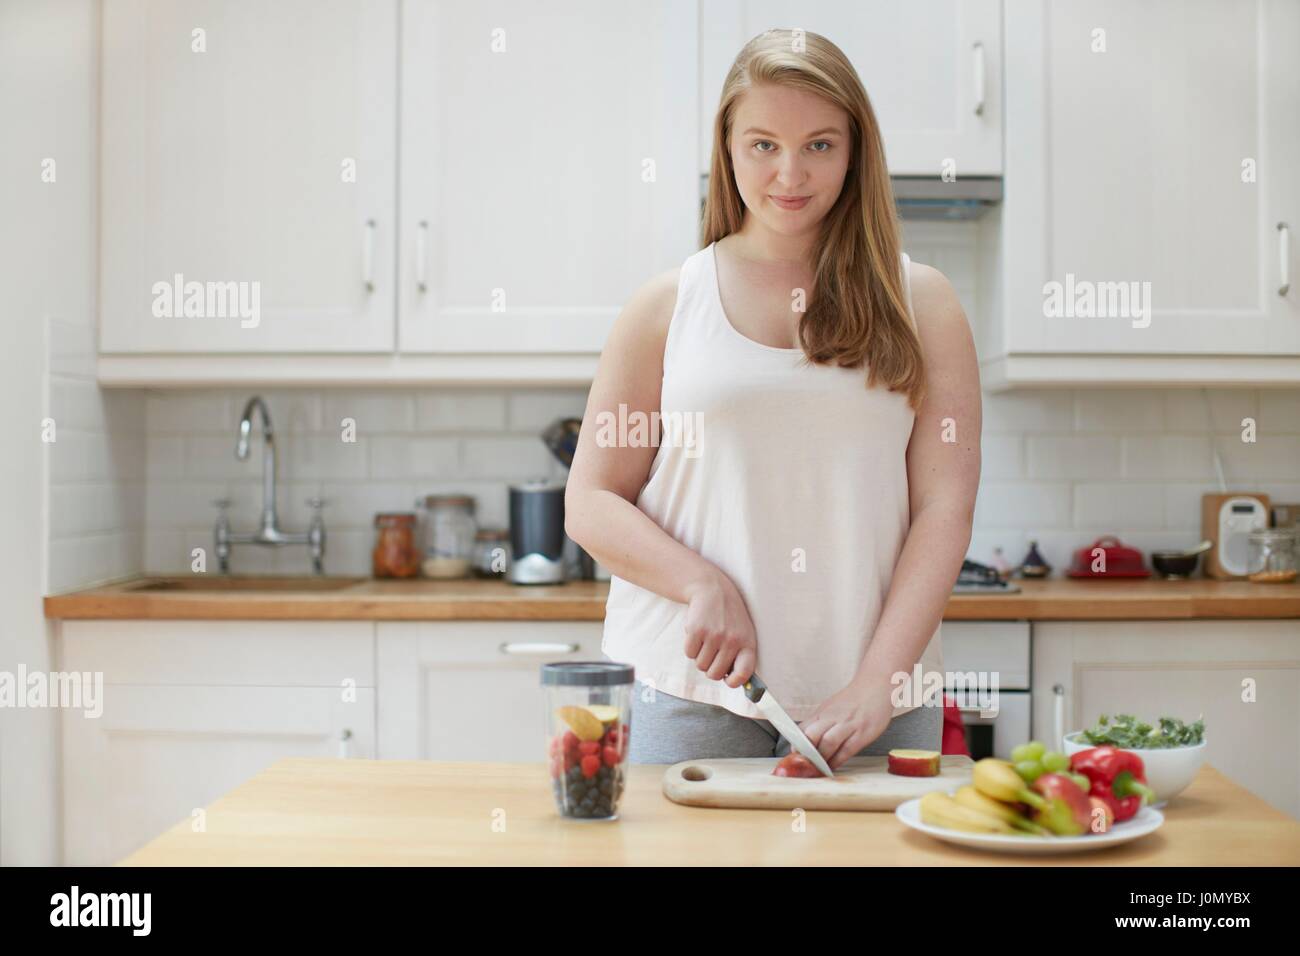 Junge Frau, die Zubereitung von gesunden Speisen in Küche. Stockfoto